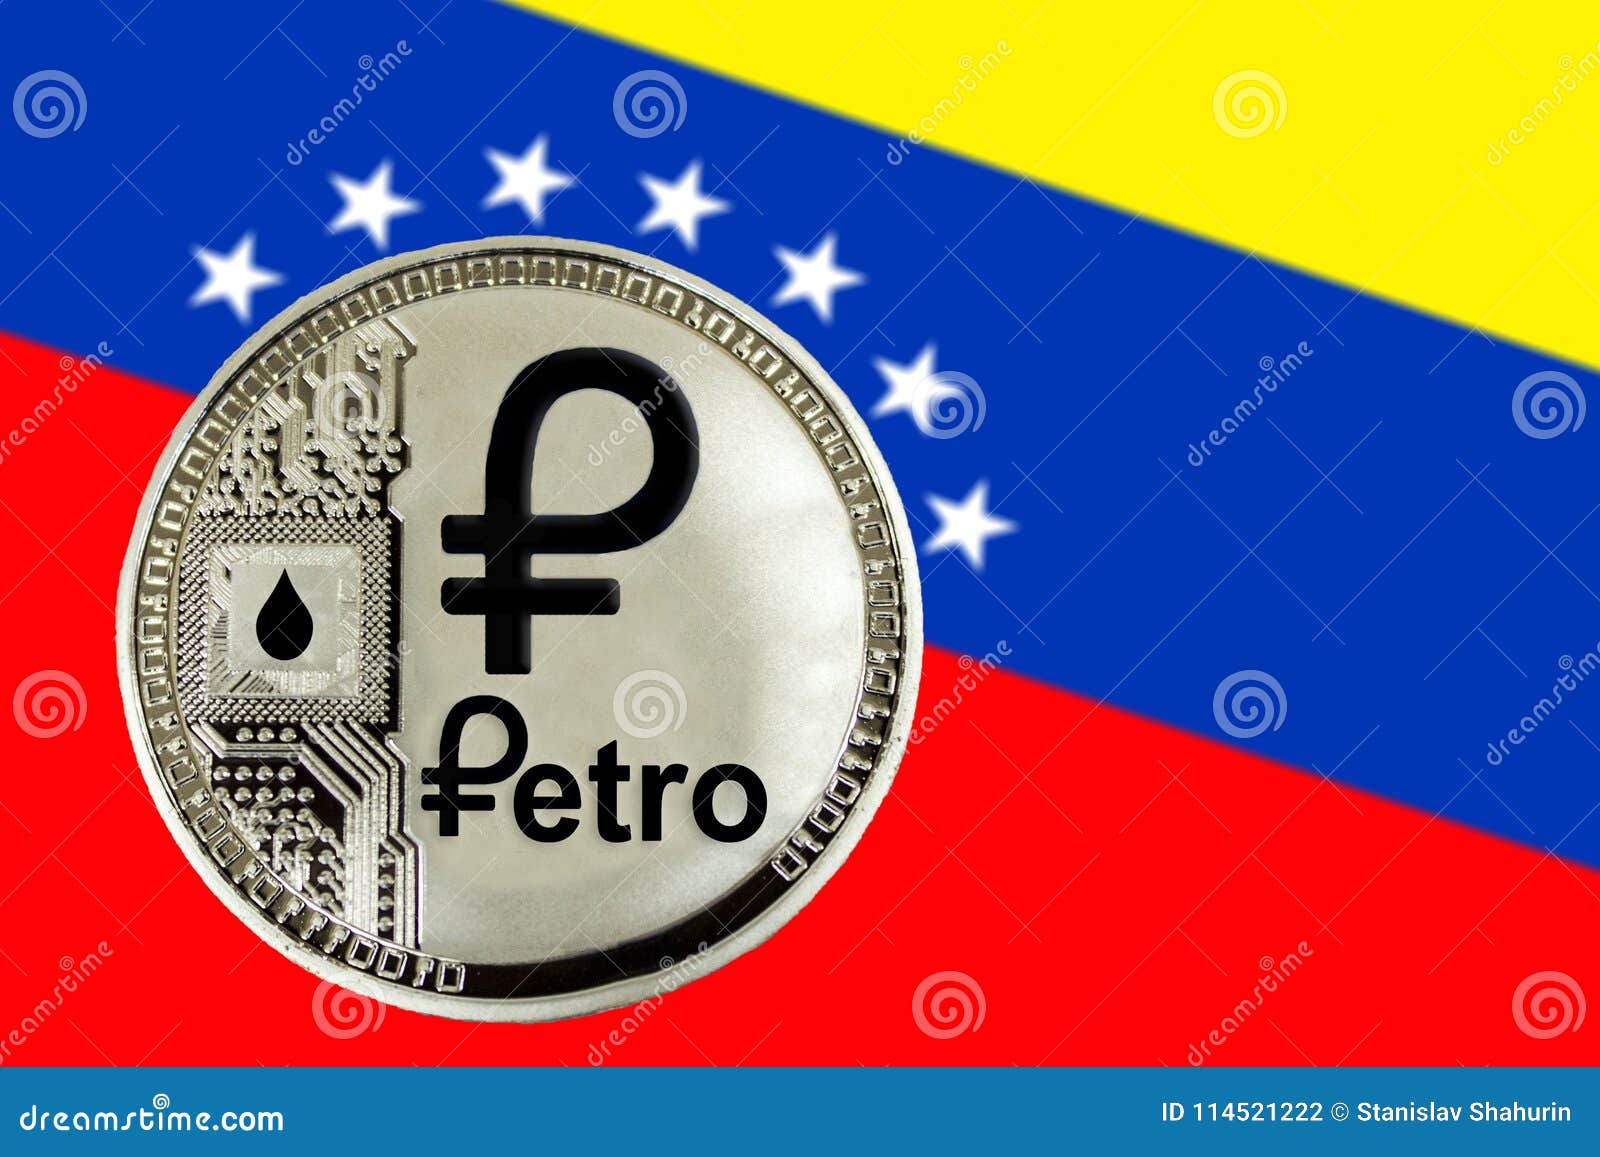 Venezuela crypto petro астана обмен валюта